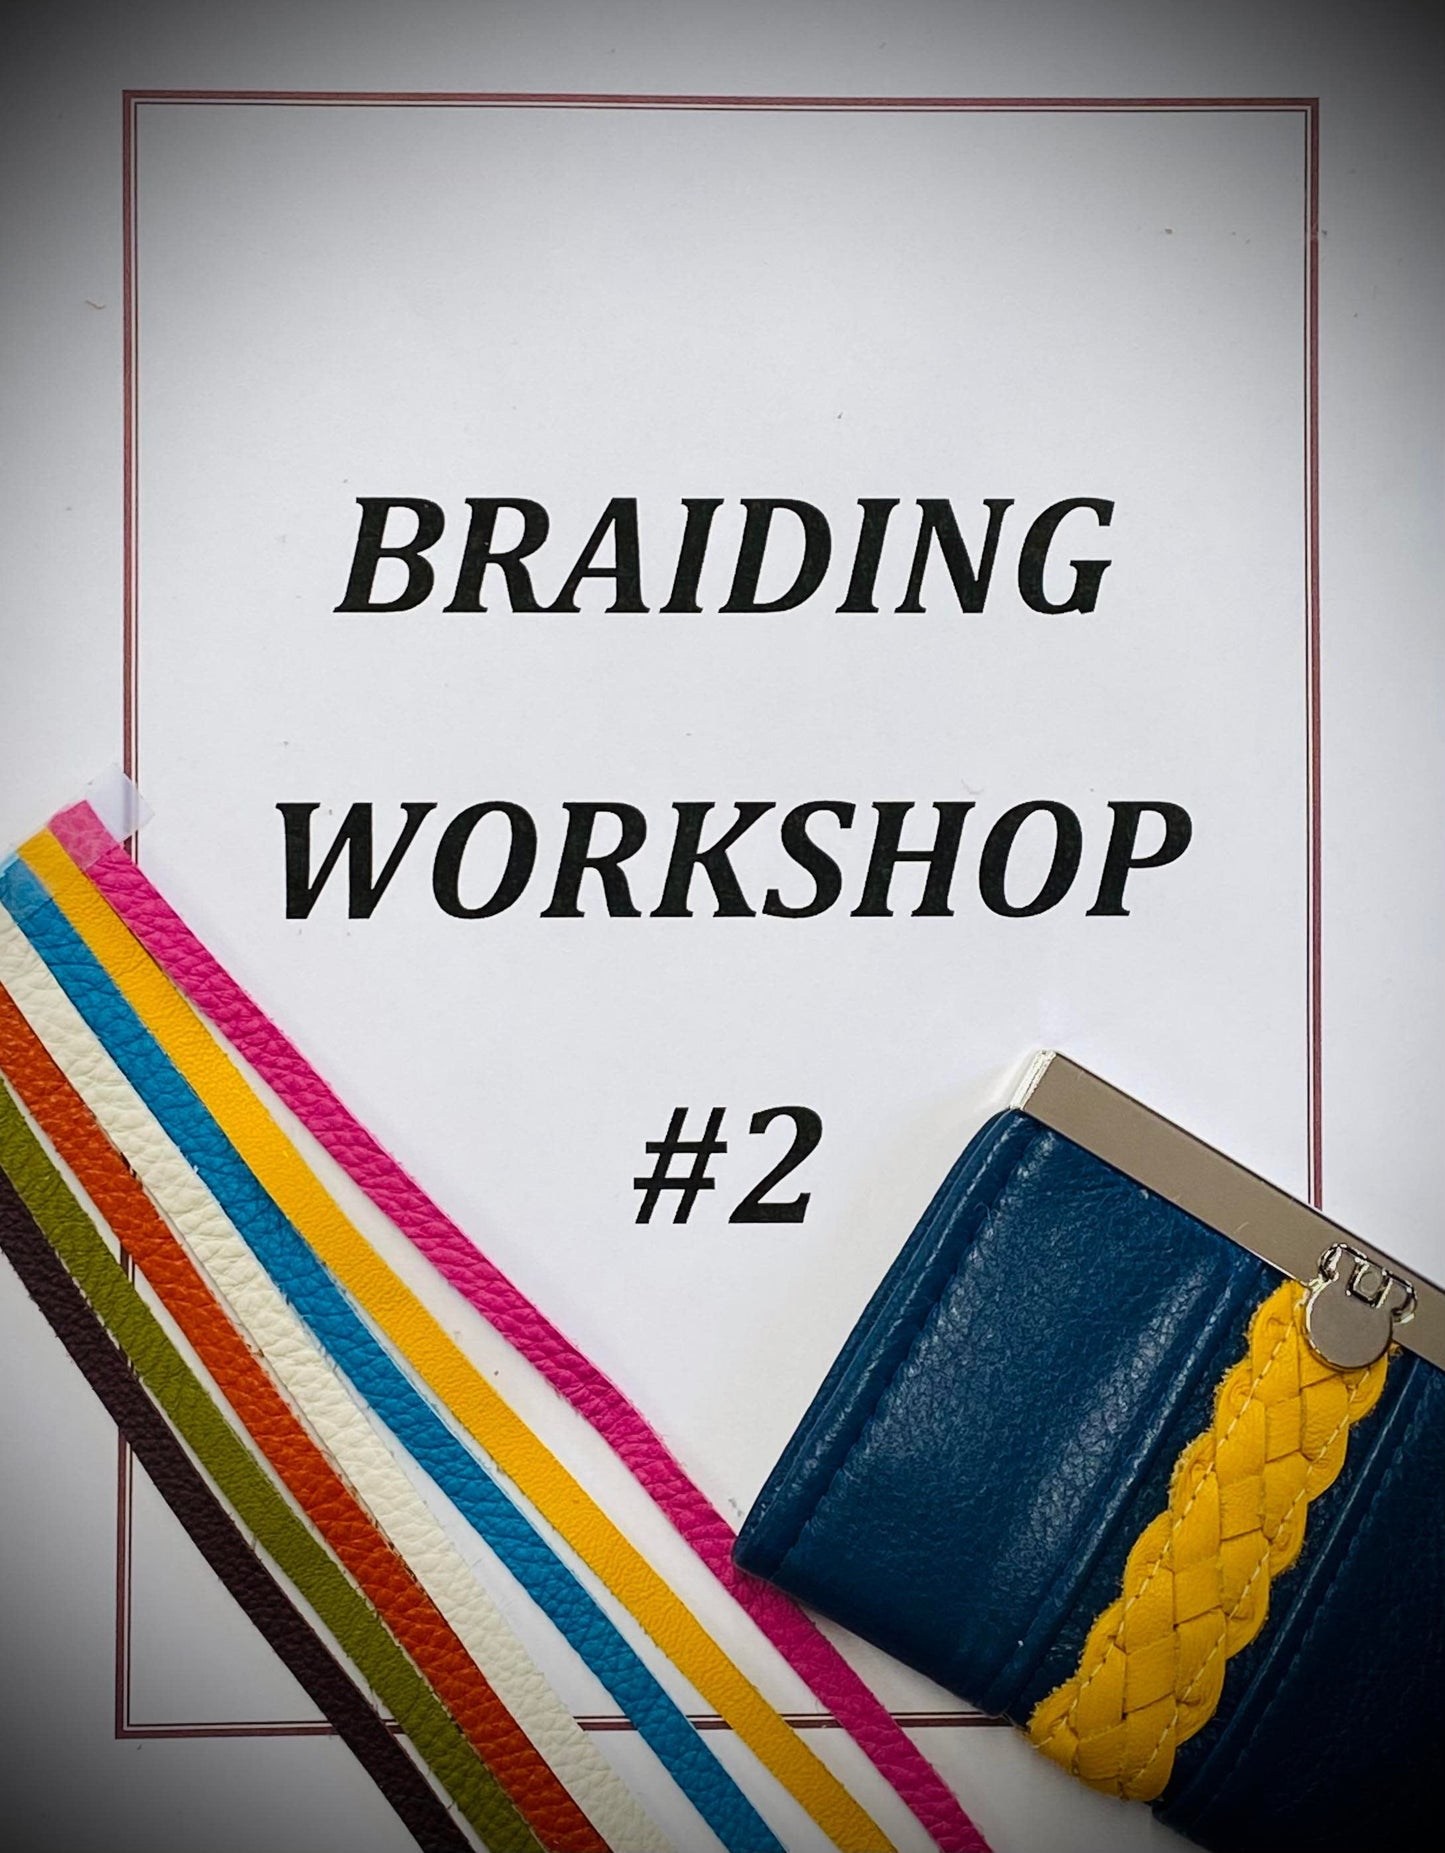 Braiding Techniques Workshop #2- Session 4, Video 1